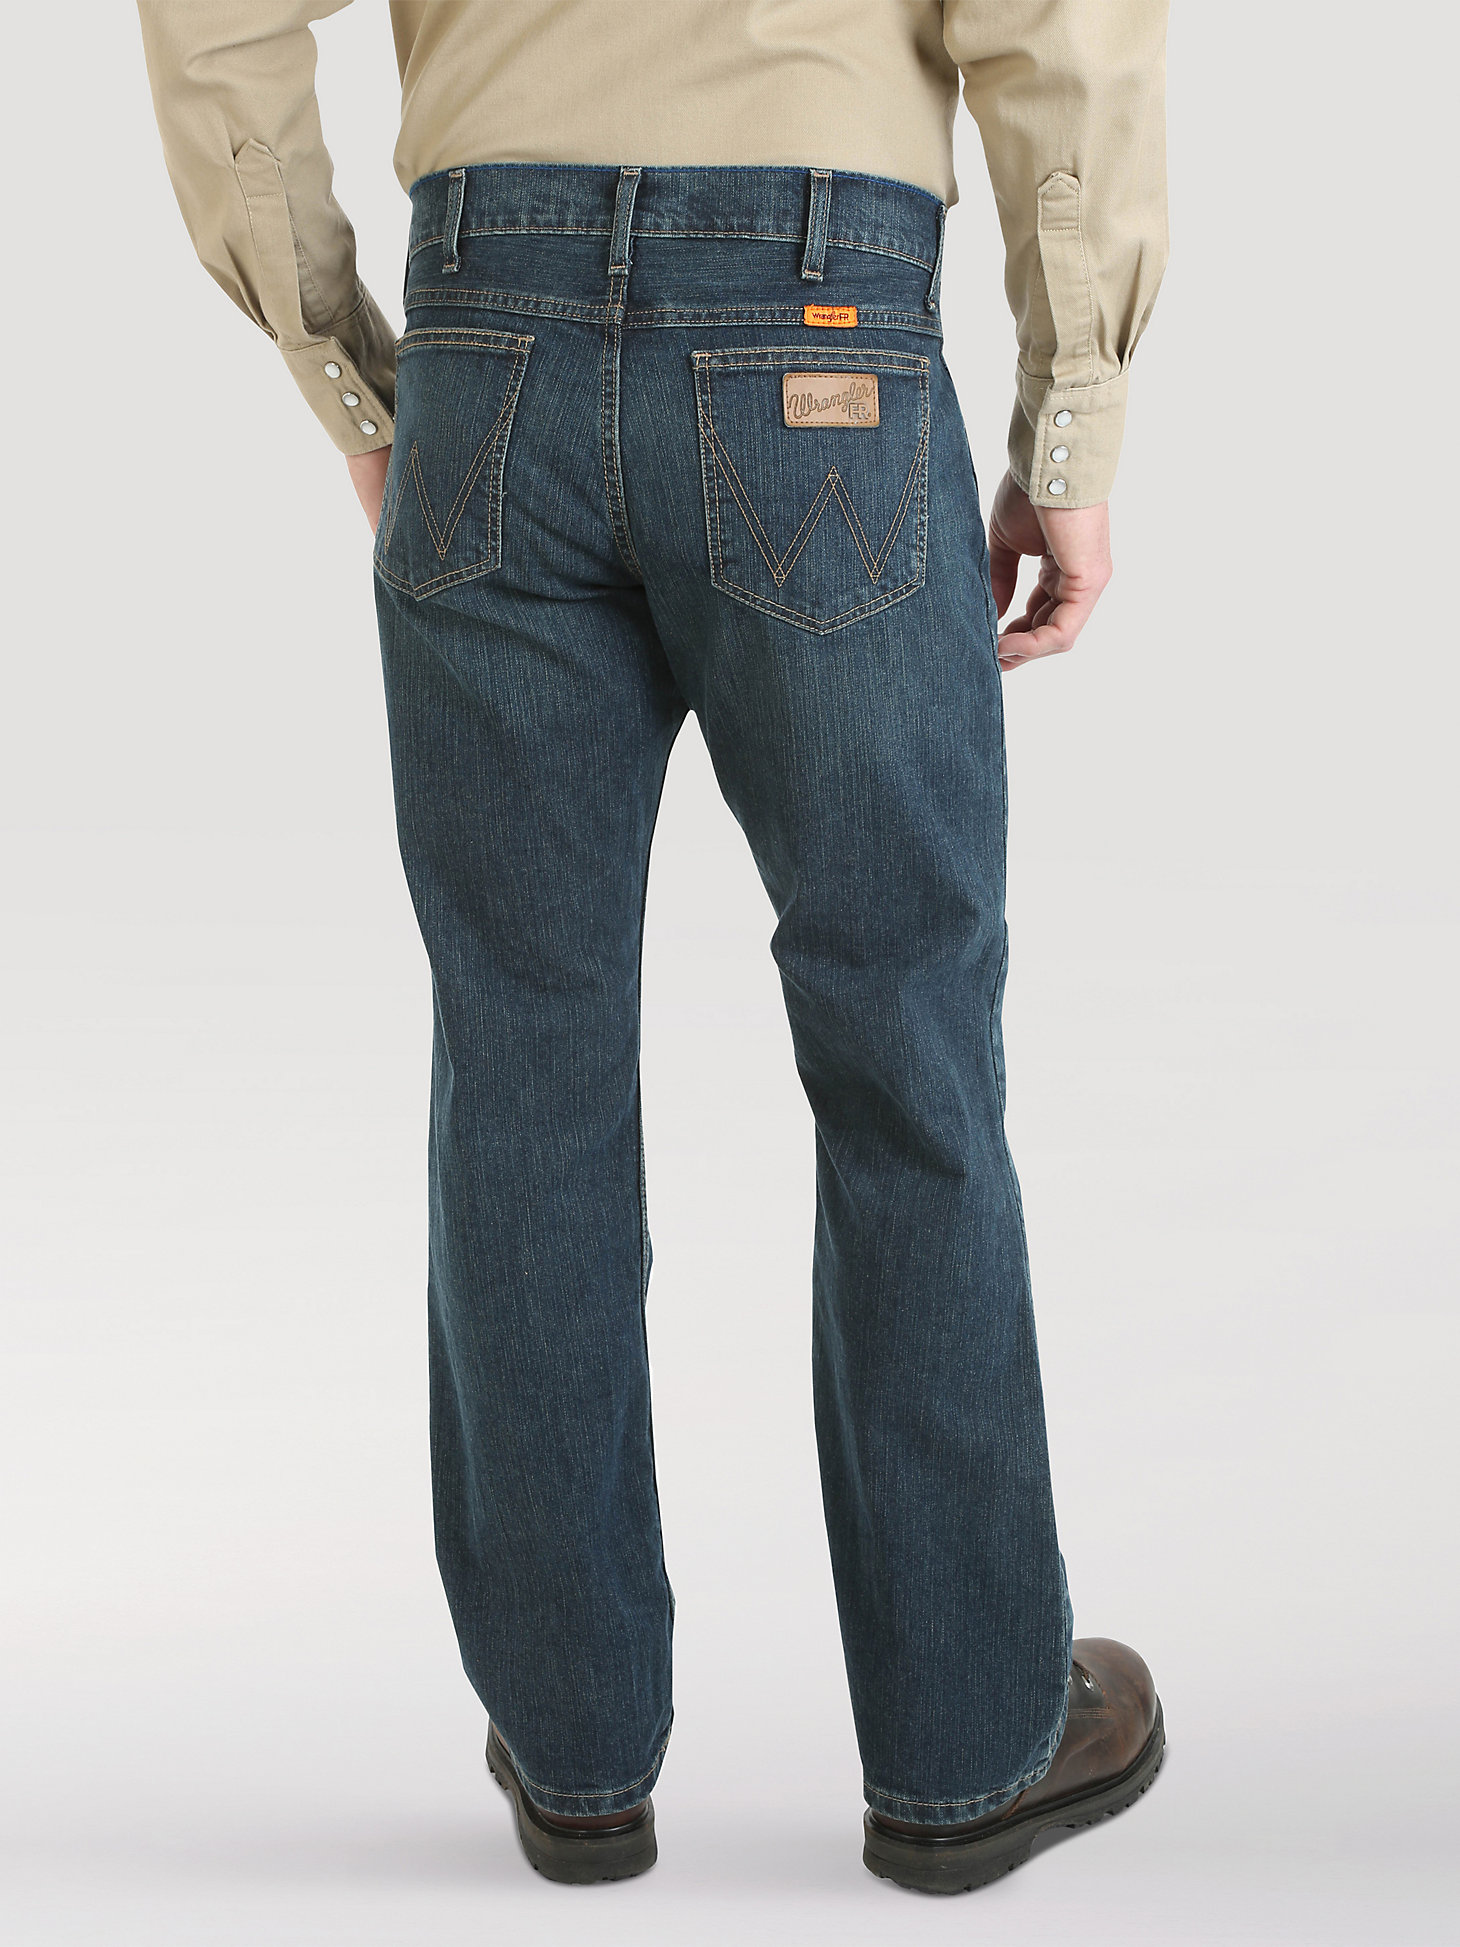 Wrangler Retro® FR Flame Resistant Slim Boot Jean in Caden Dark Tint alternative view 1